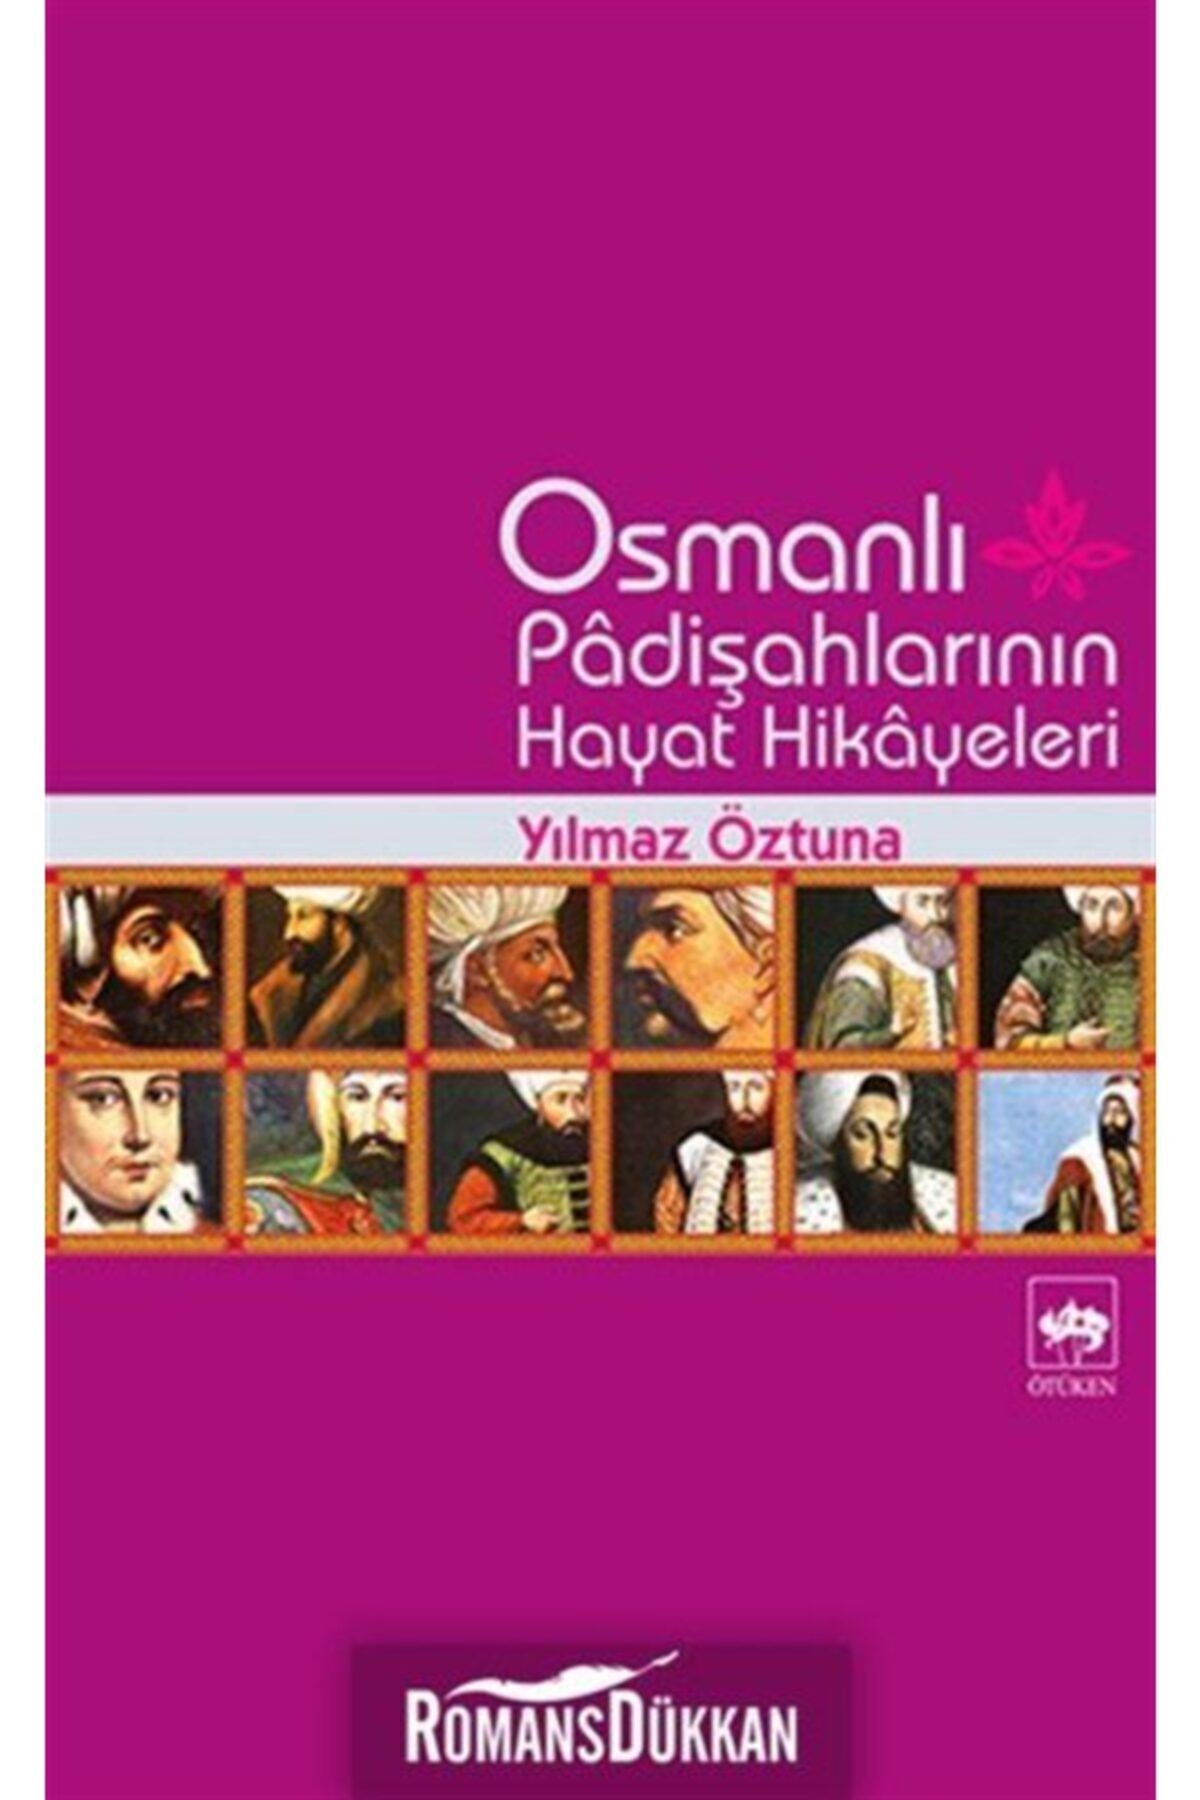 Ötüken Neşriyat Osmanlı Padişahlarının Hayat Hikayeleri Yılmaz Öztuna - Yılmaz Öztuna